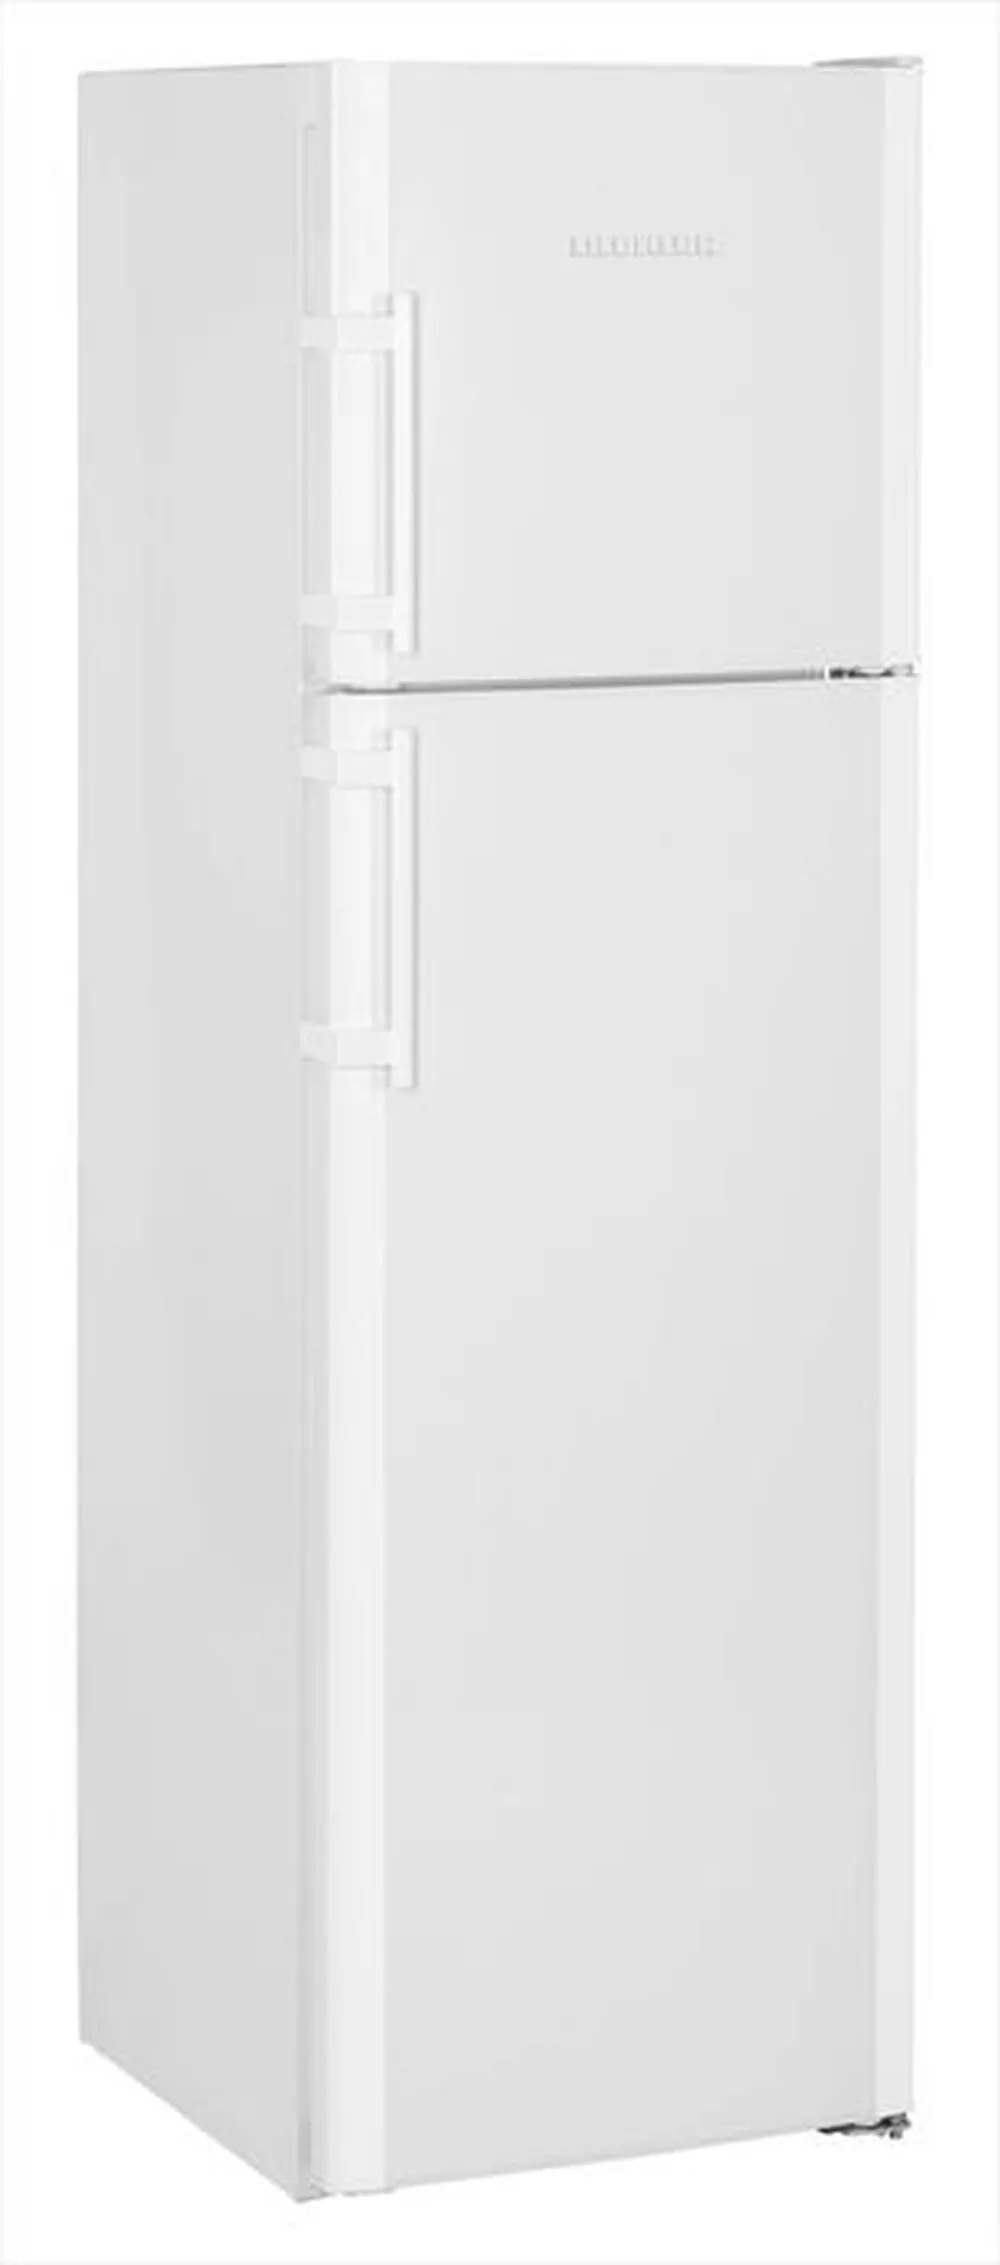 NoFrost Double Door Refrigerator 60 cm CTN 3663-22 Liebherr